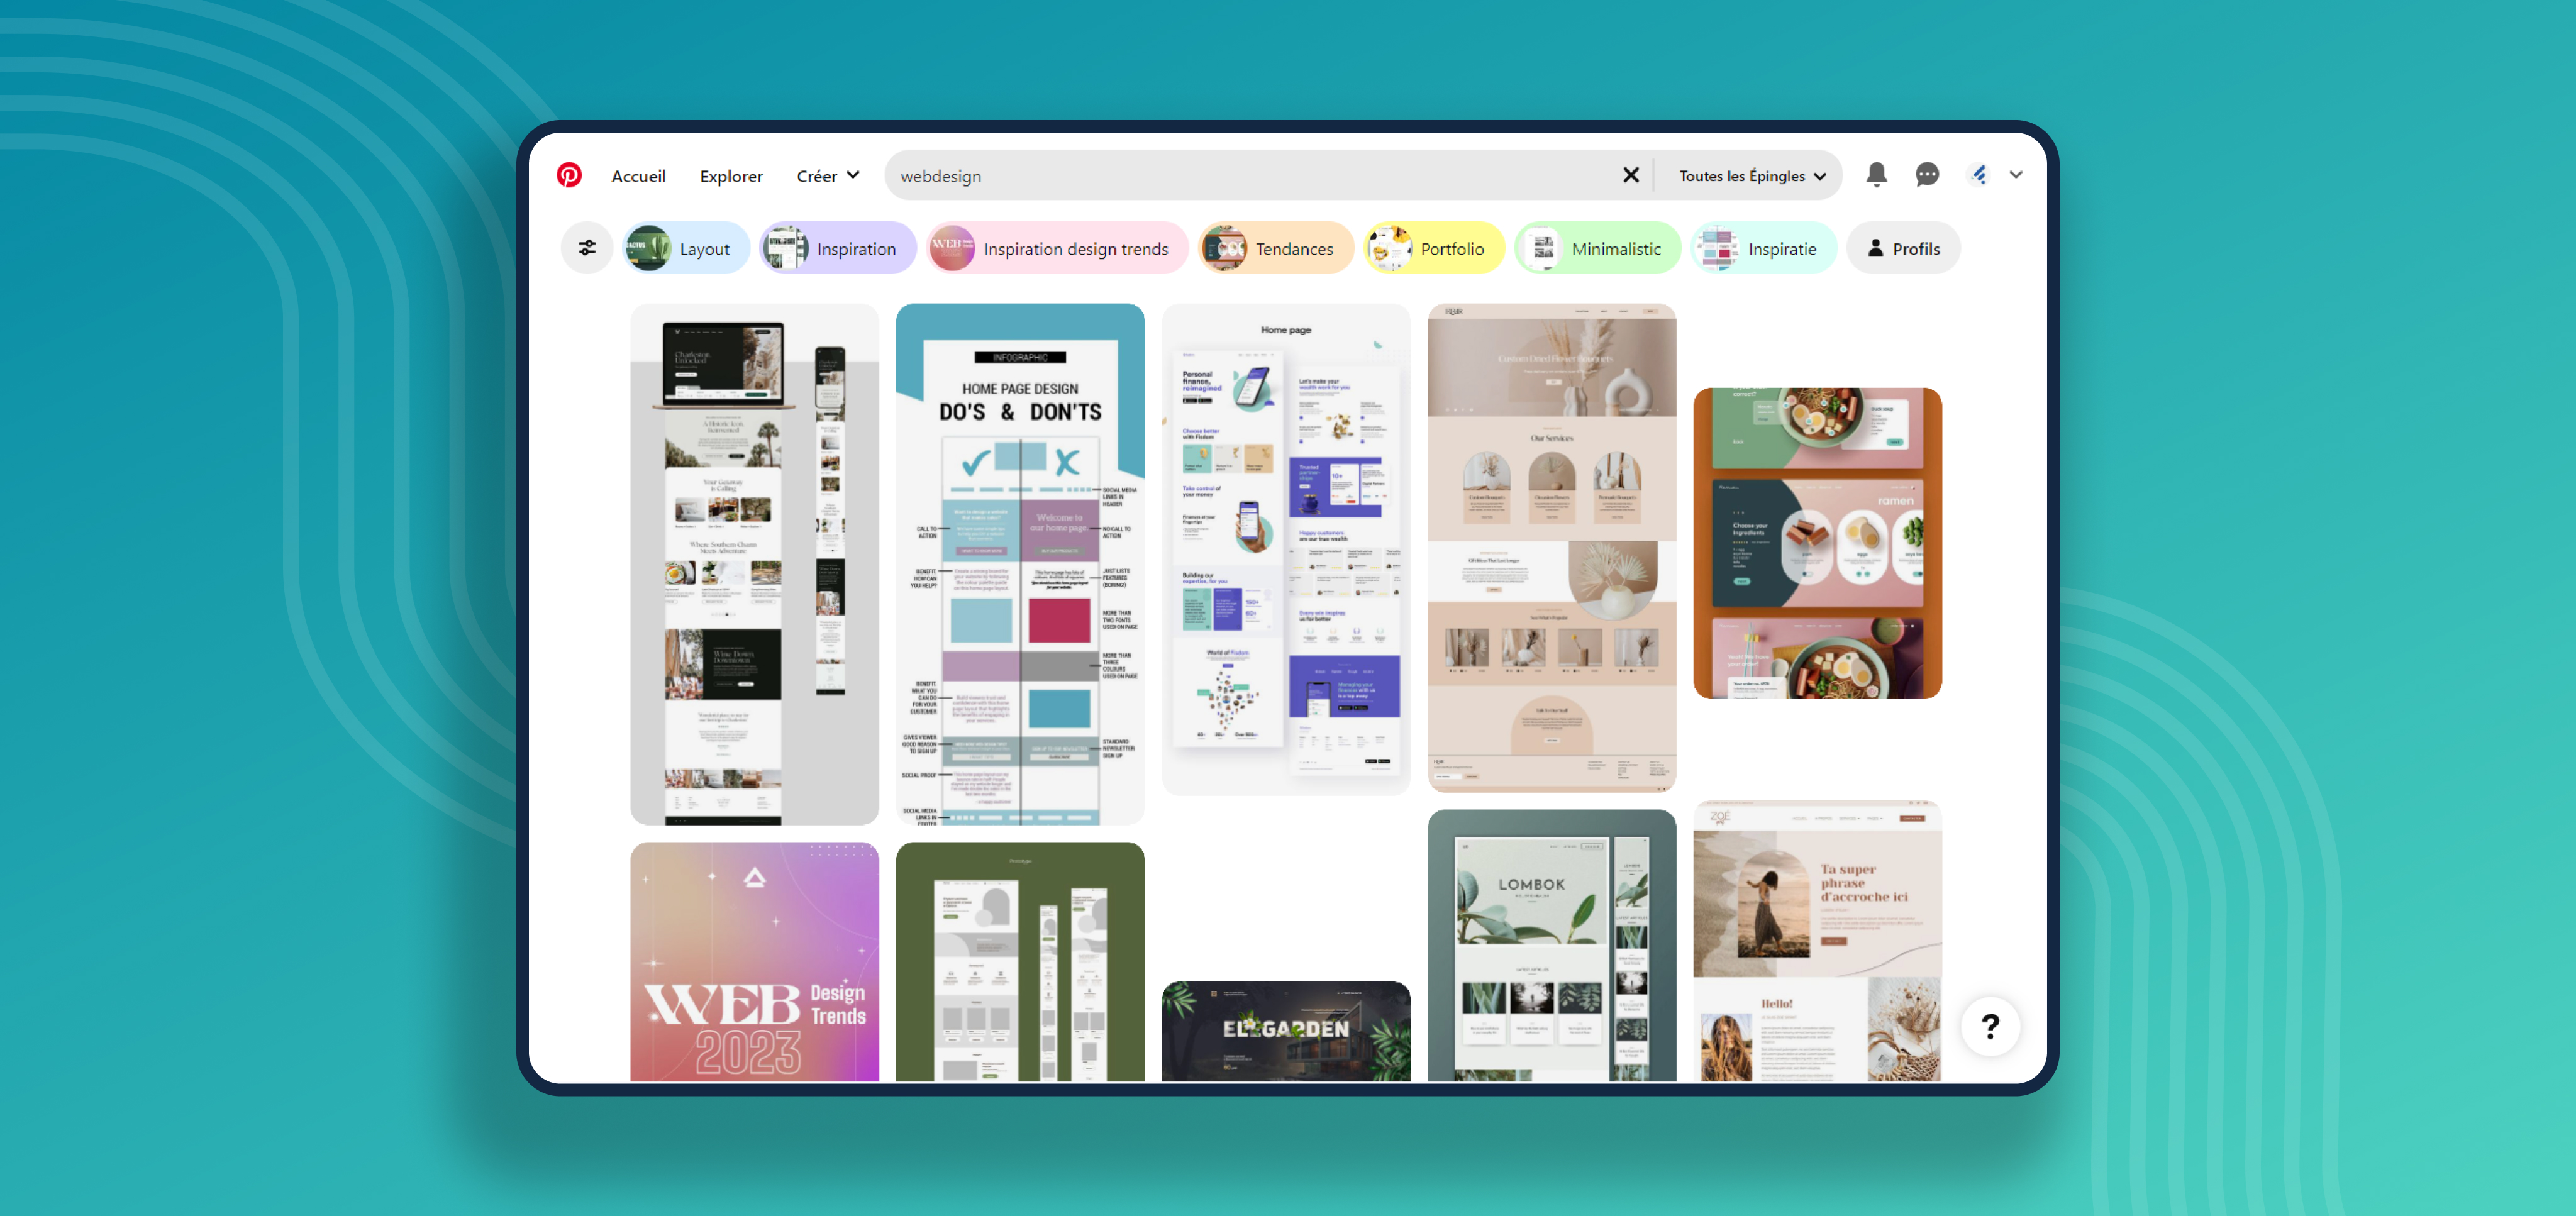 Le site d'inspiration en webdesign Pinterest